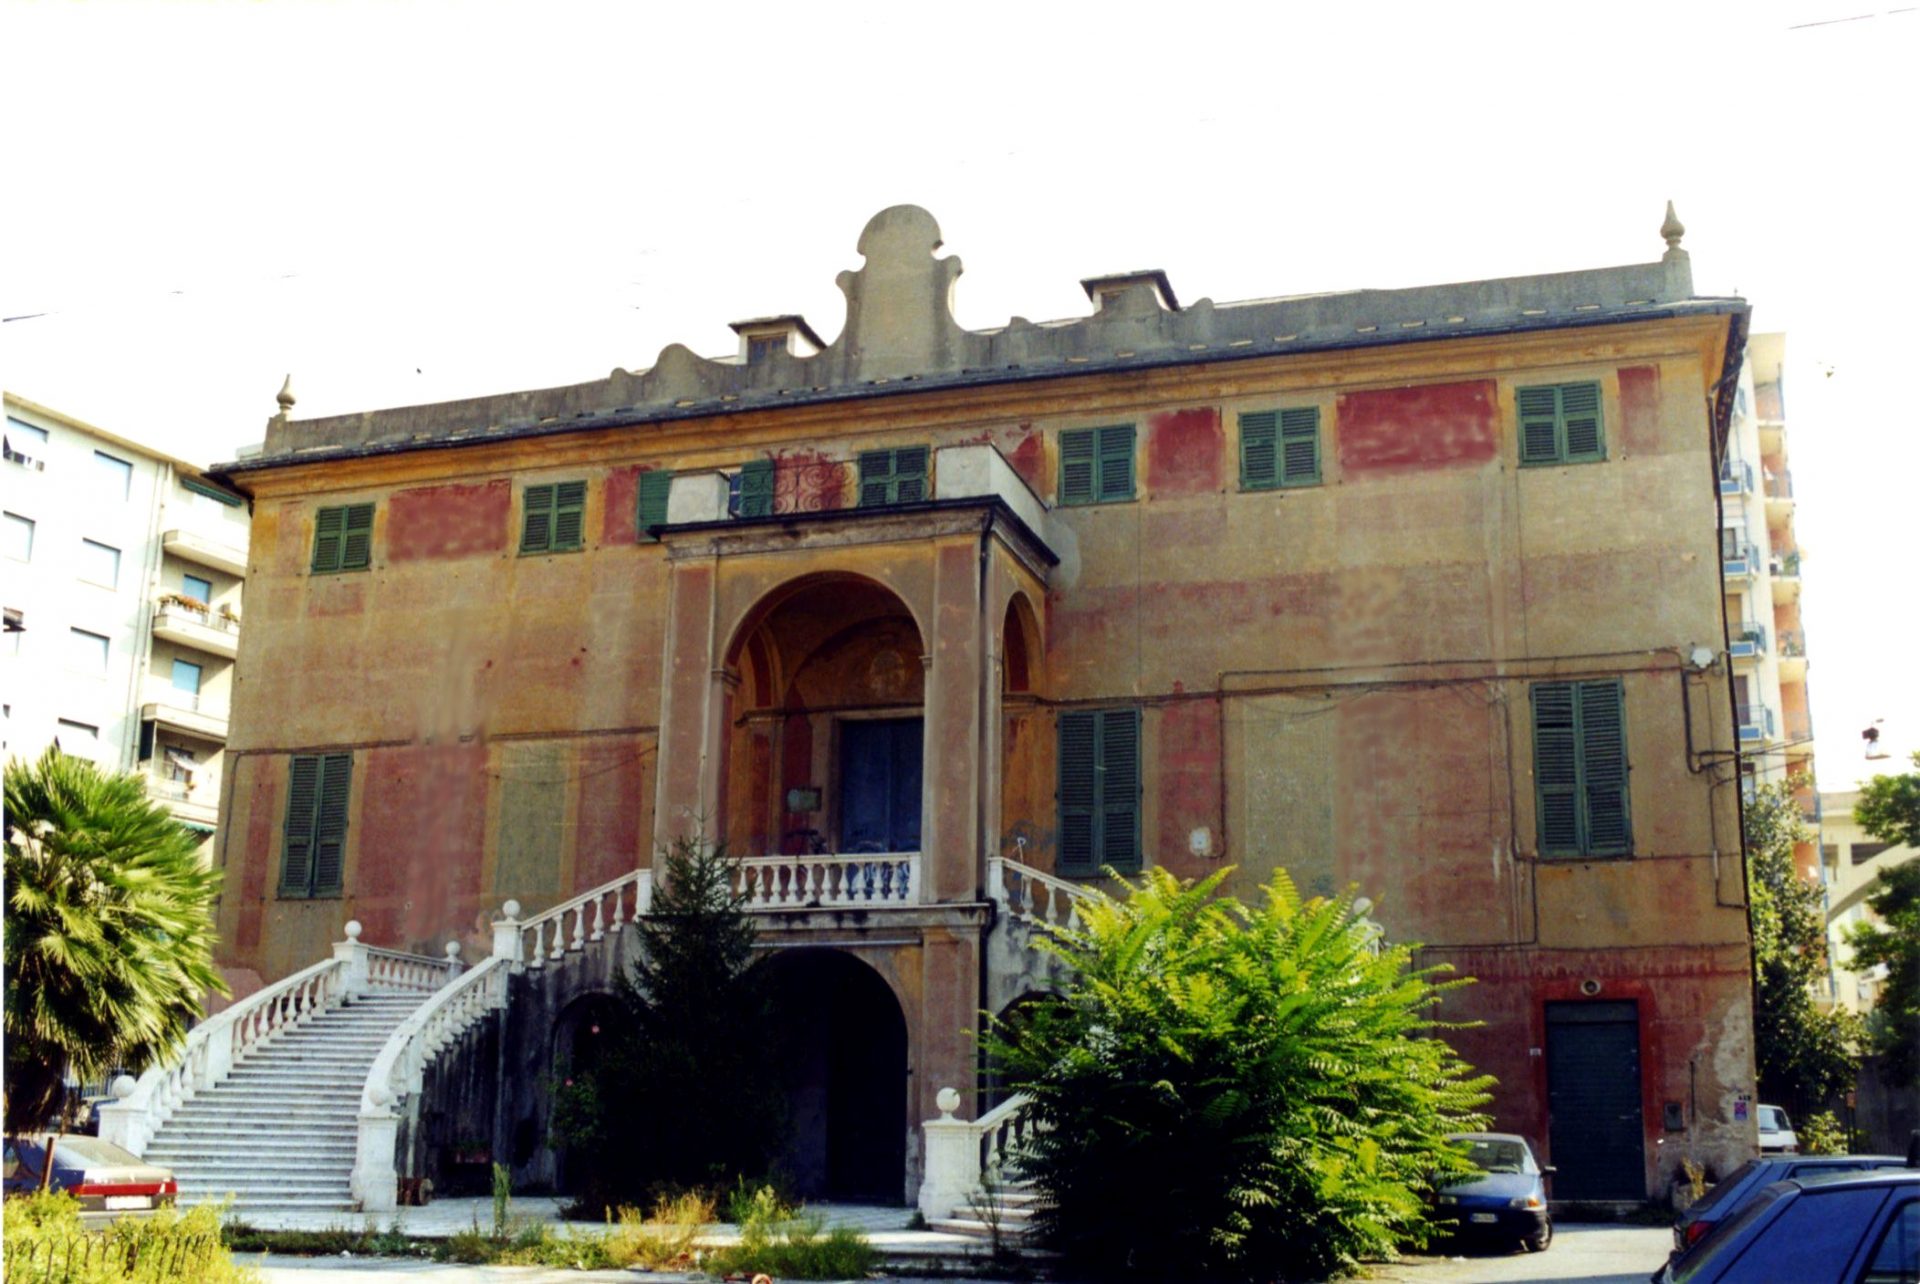 Un intervento del valore di 5,5 milioni di euro, tra acquisto e ristrutturazione, per far tornare Villa Pallavicini cuore pulsante di Rivarolo